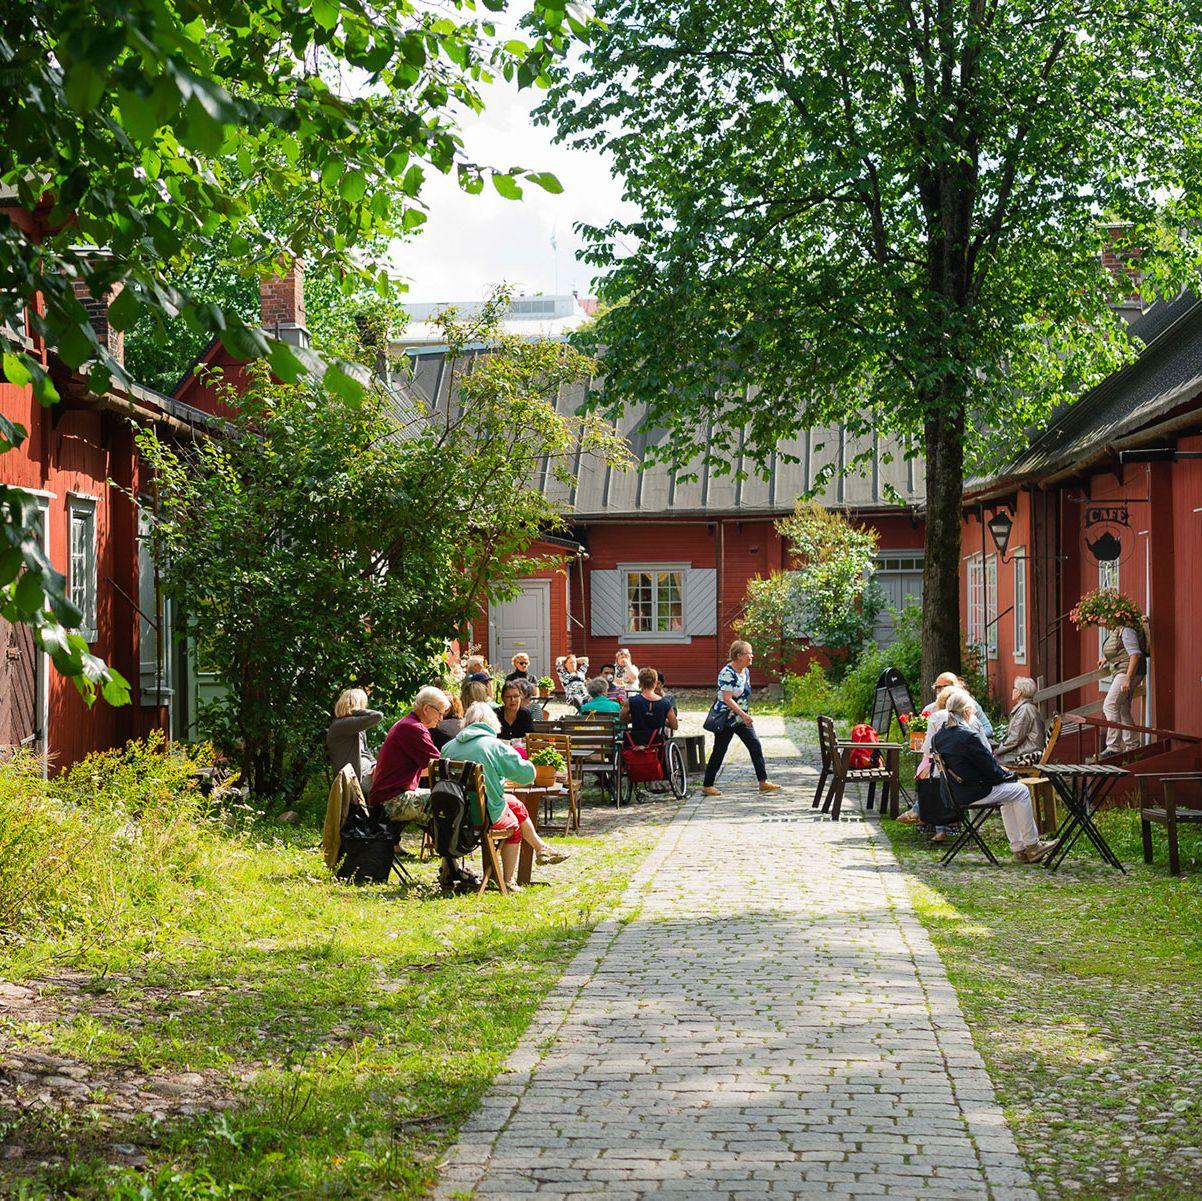 Besökare sitter i Cafe Qwensels uteträdgård och njuter av kaffe och kaka.